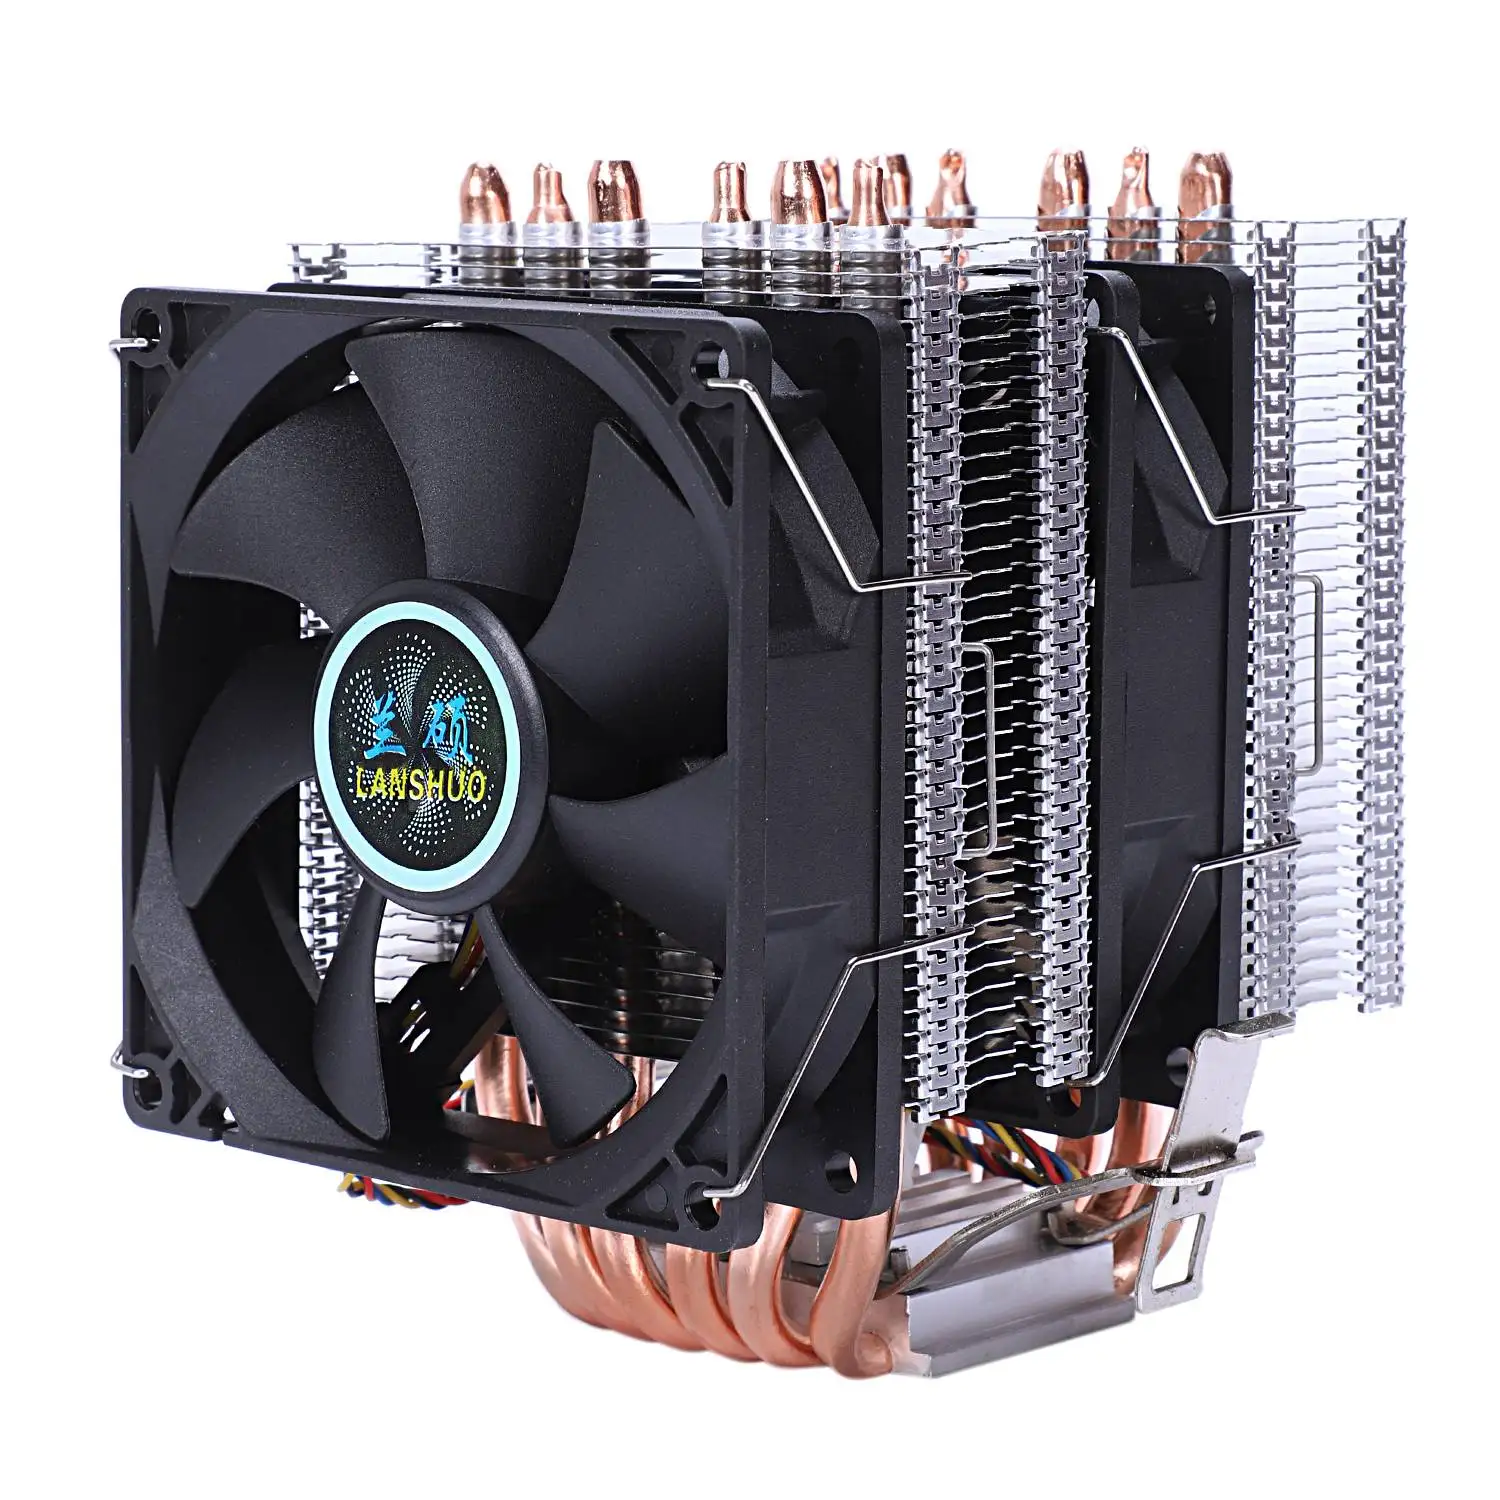 Lanshuo 6 тепловая трубка 4 провода без светильник двойной вентилятор Cpu вентилятор Радиатор кулер теплоотвод для Intel Lga 1155/1156/1366 охладитель тепла